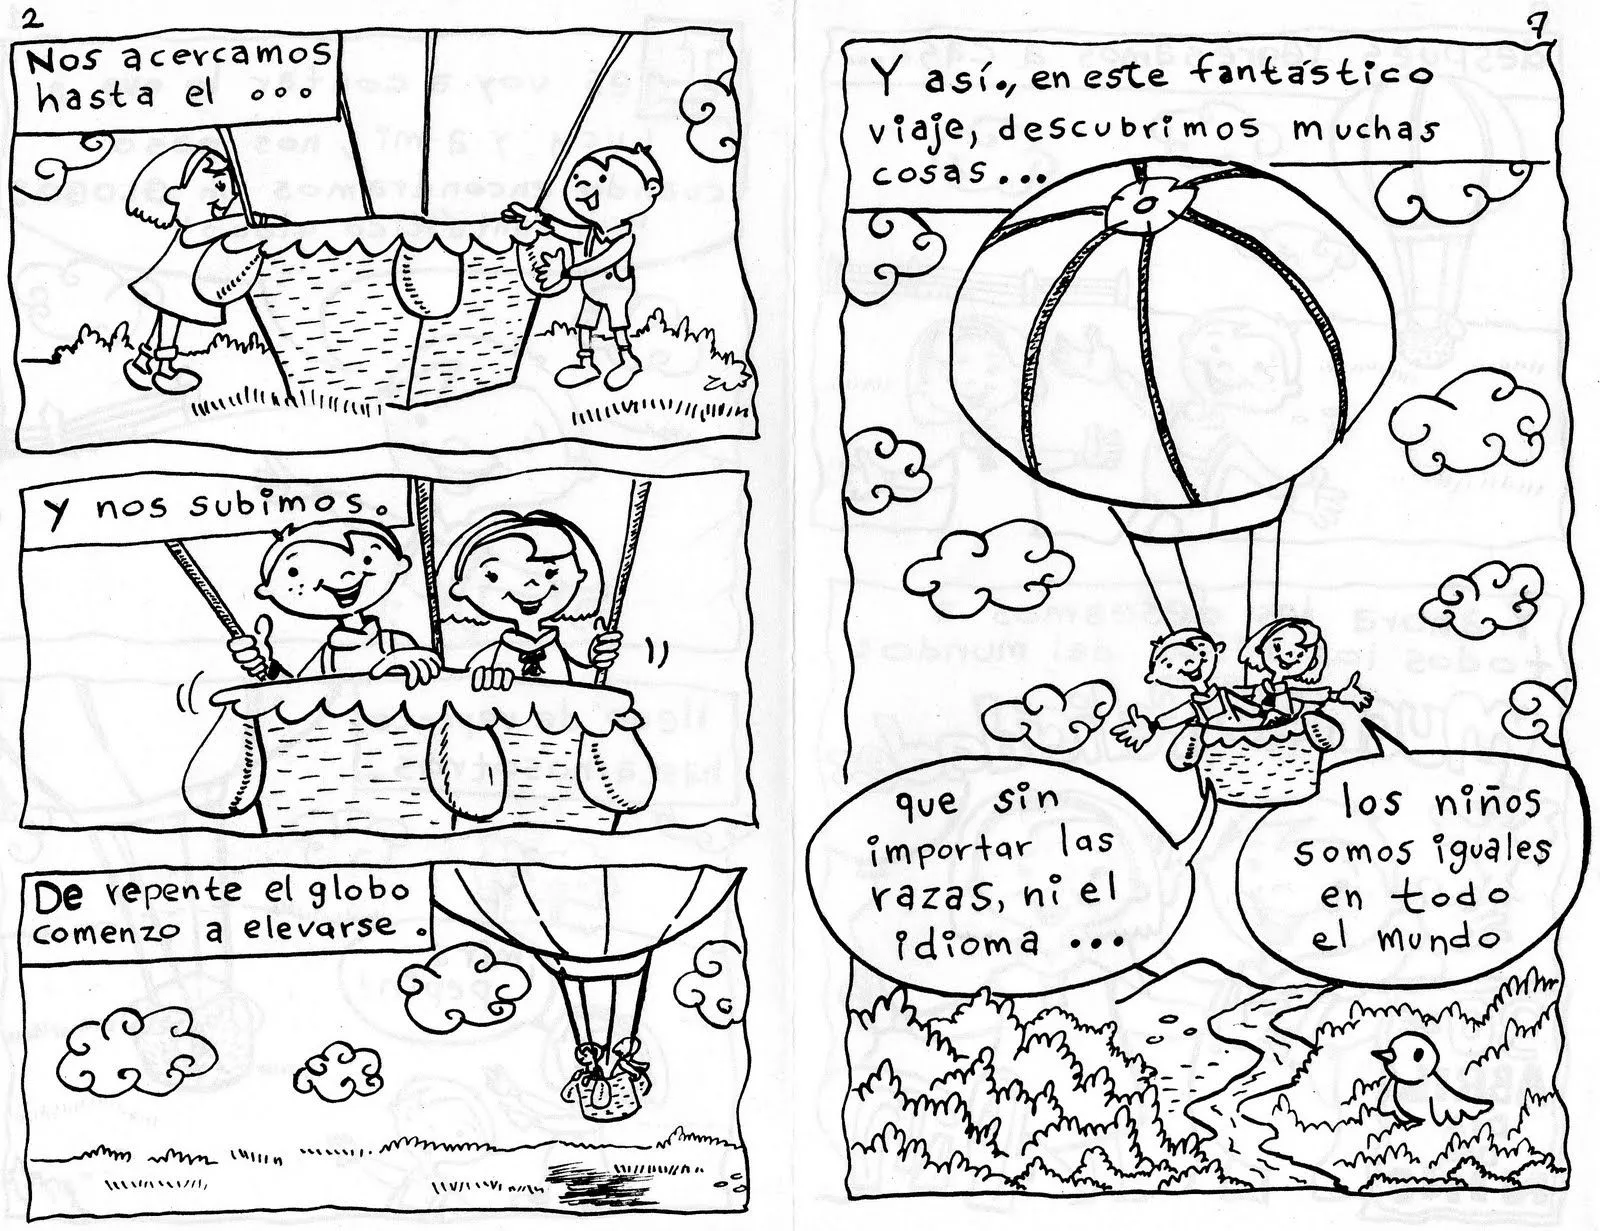 tony garabato caricaturista: algunas ilustraciones de un cuento ...